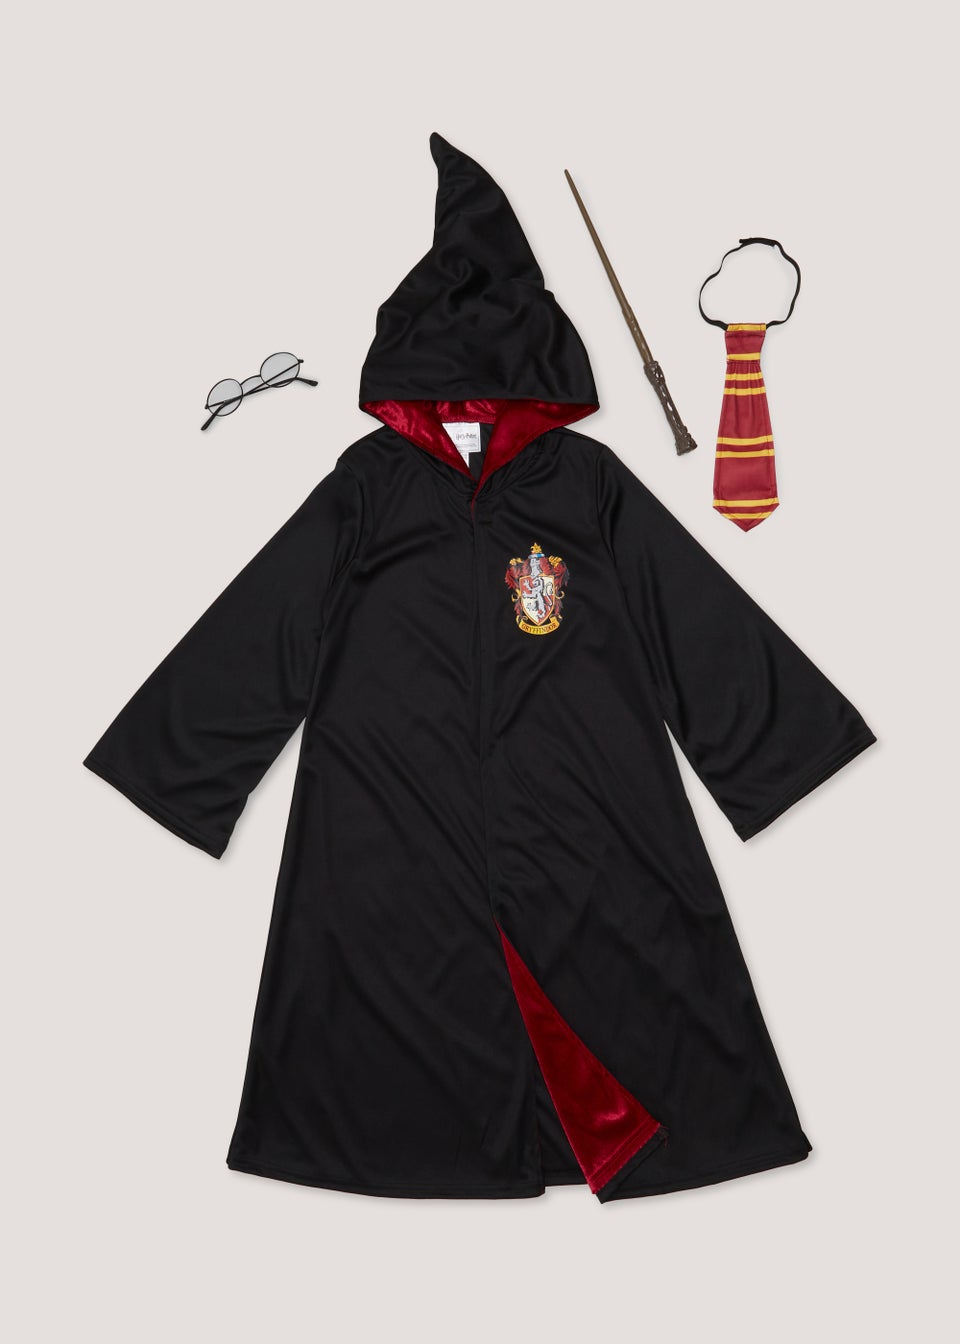 Harry Potter Hermoine Granger Gryffindor Dress Classic Girl's Costume |  Michaels